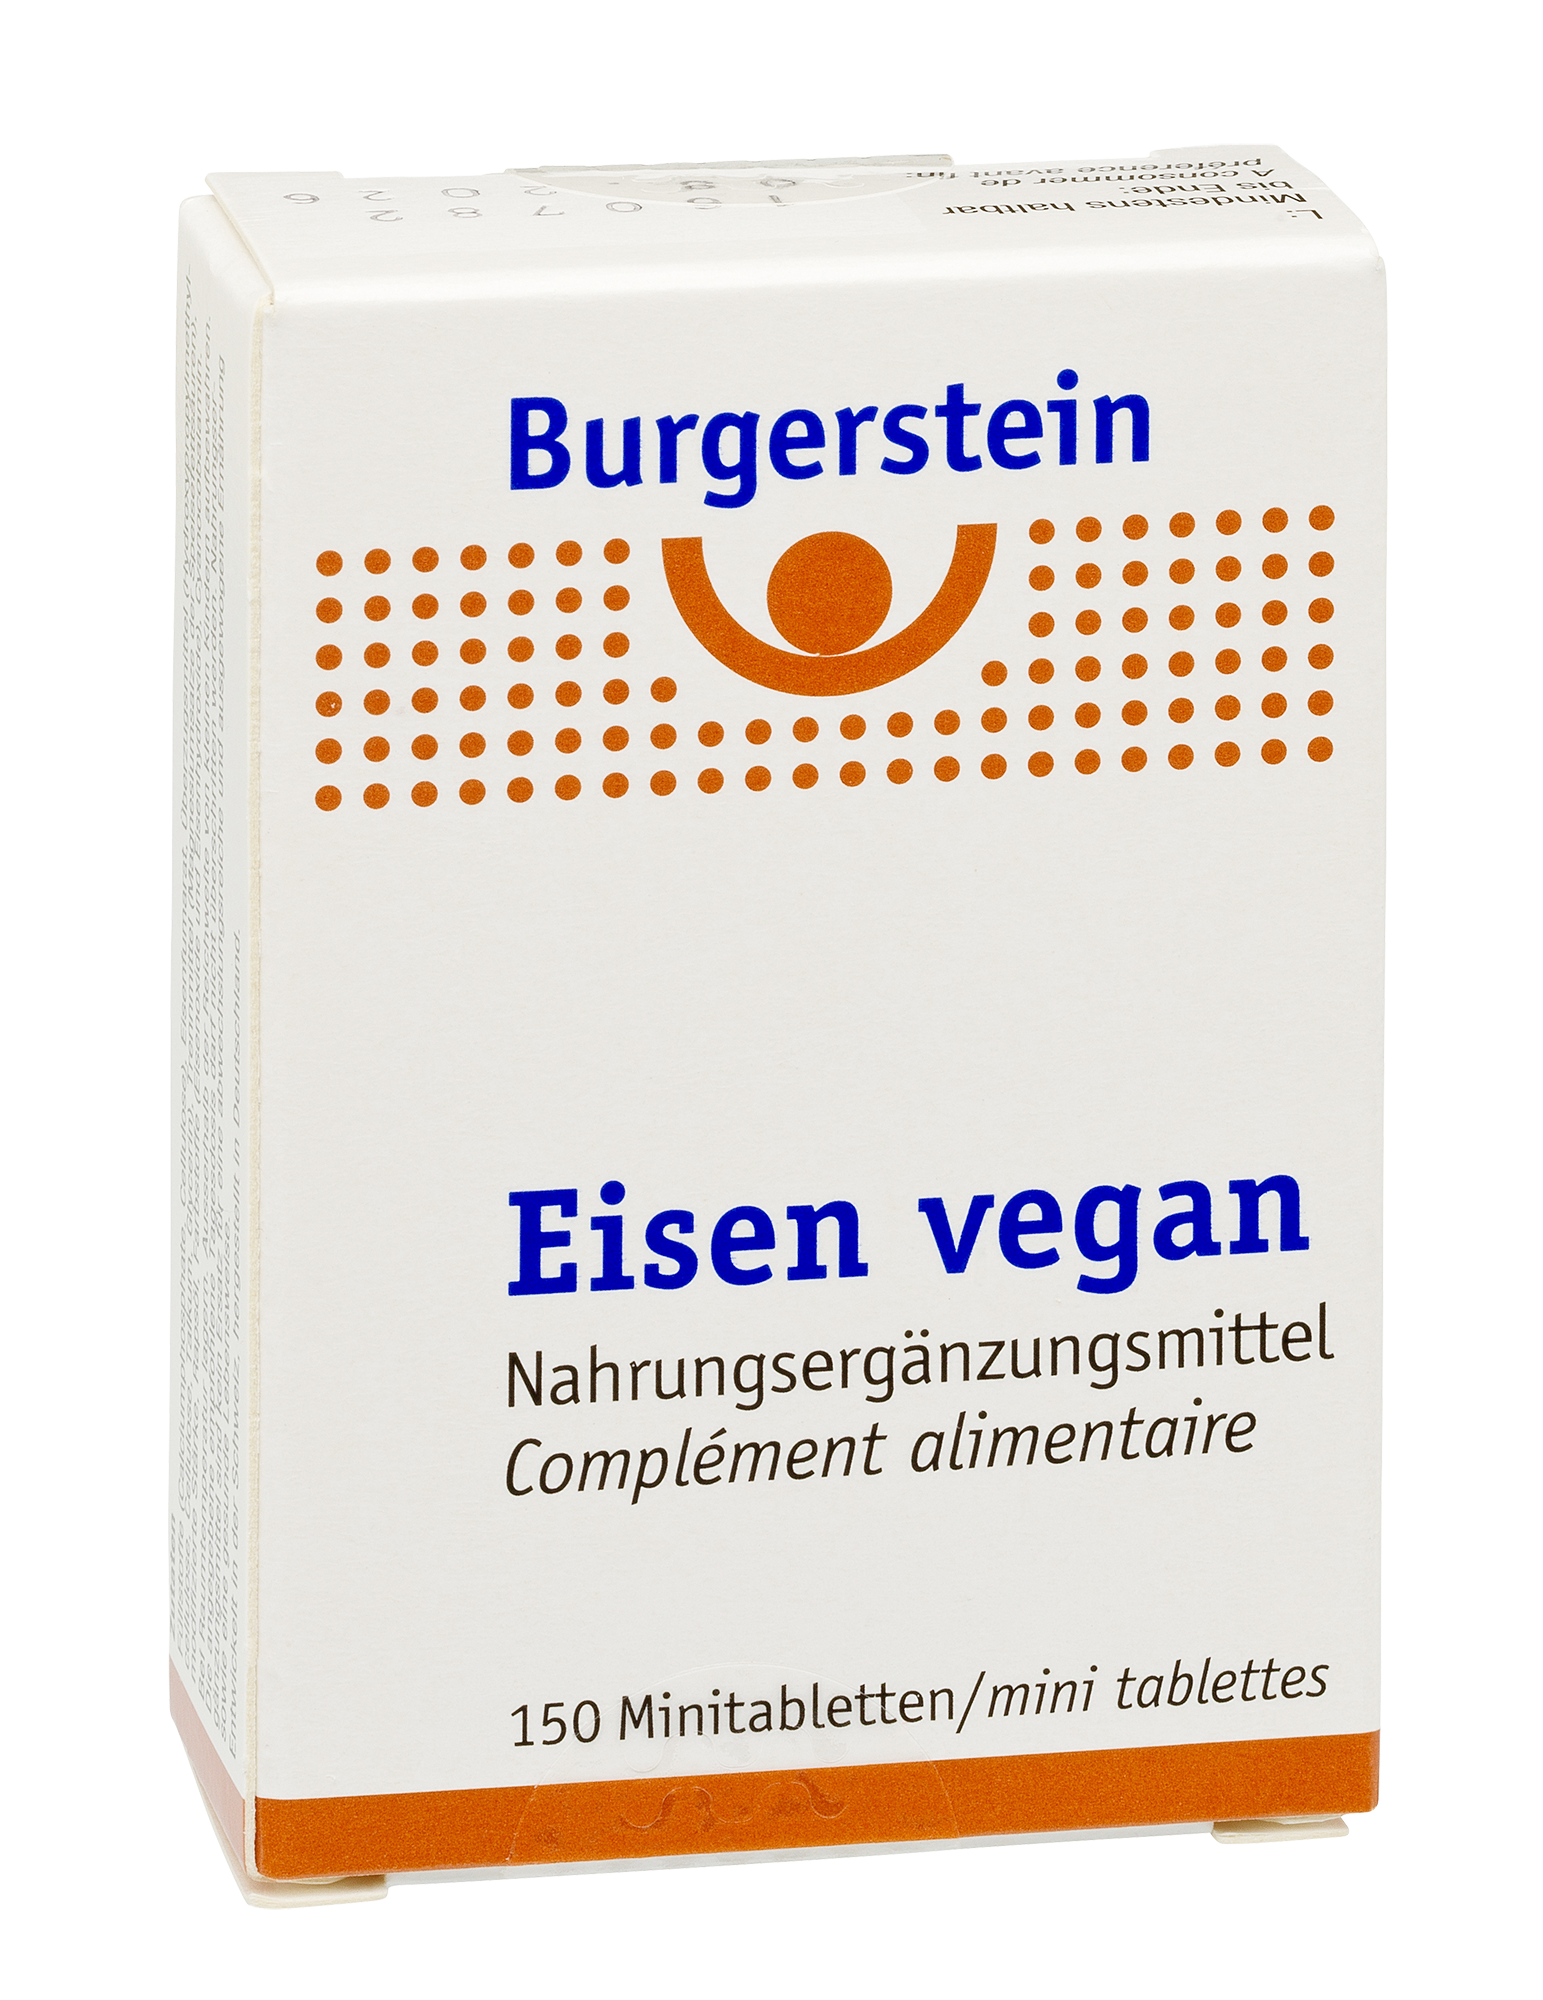 Burgerstein Eisen vegan 150 Minitabletten Verpackung